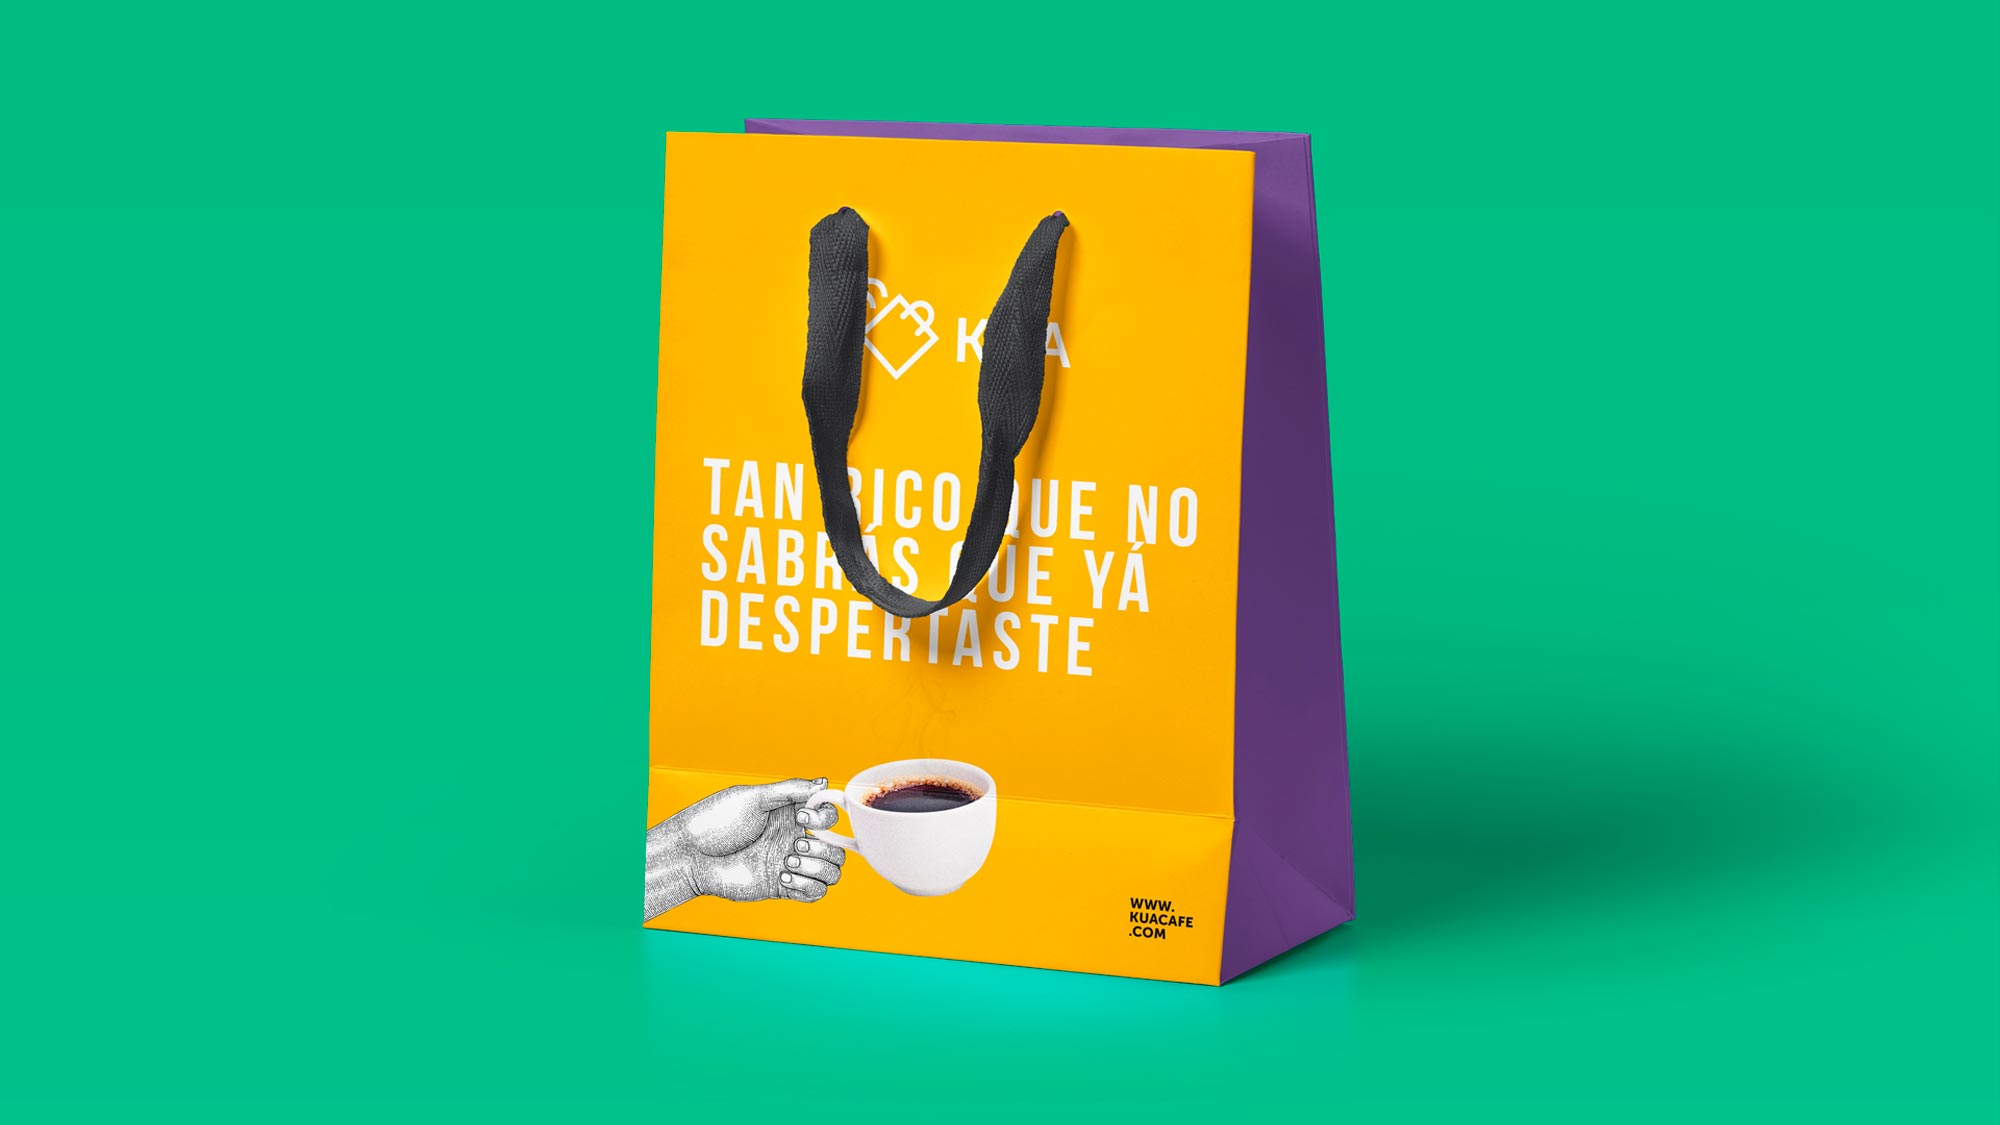 herrera-branding-studio-kua-coffee-brand-identity-shopping-bag-packaging